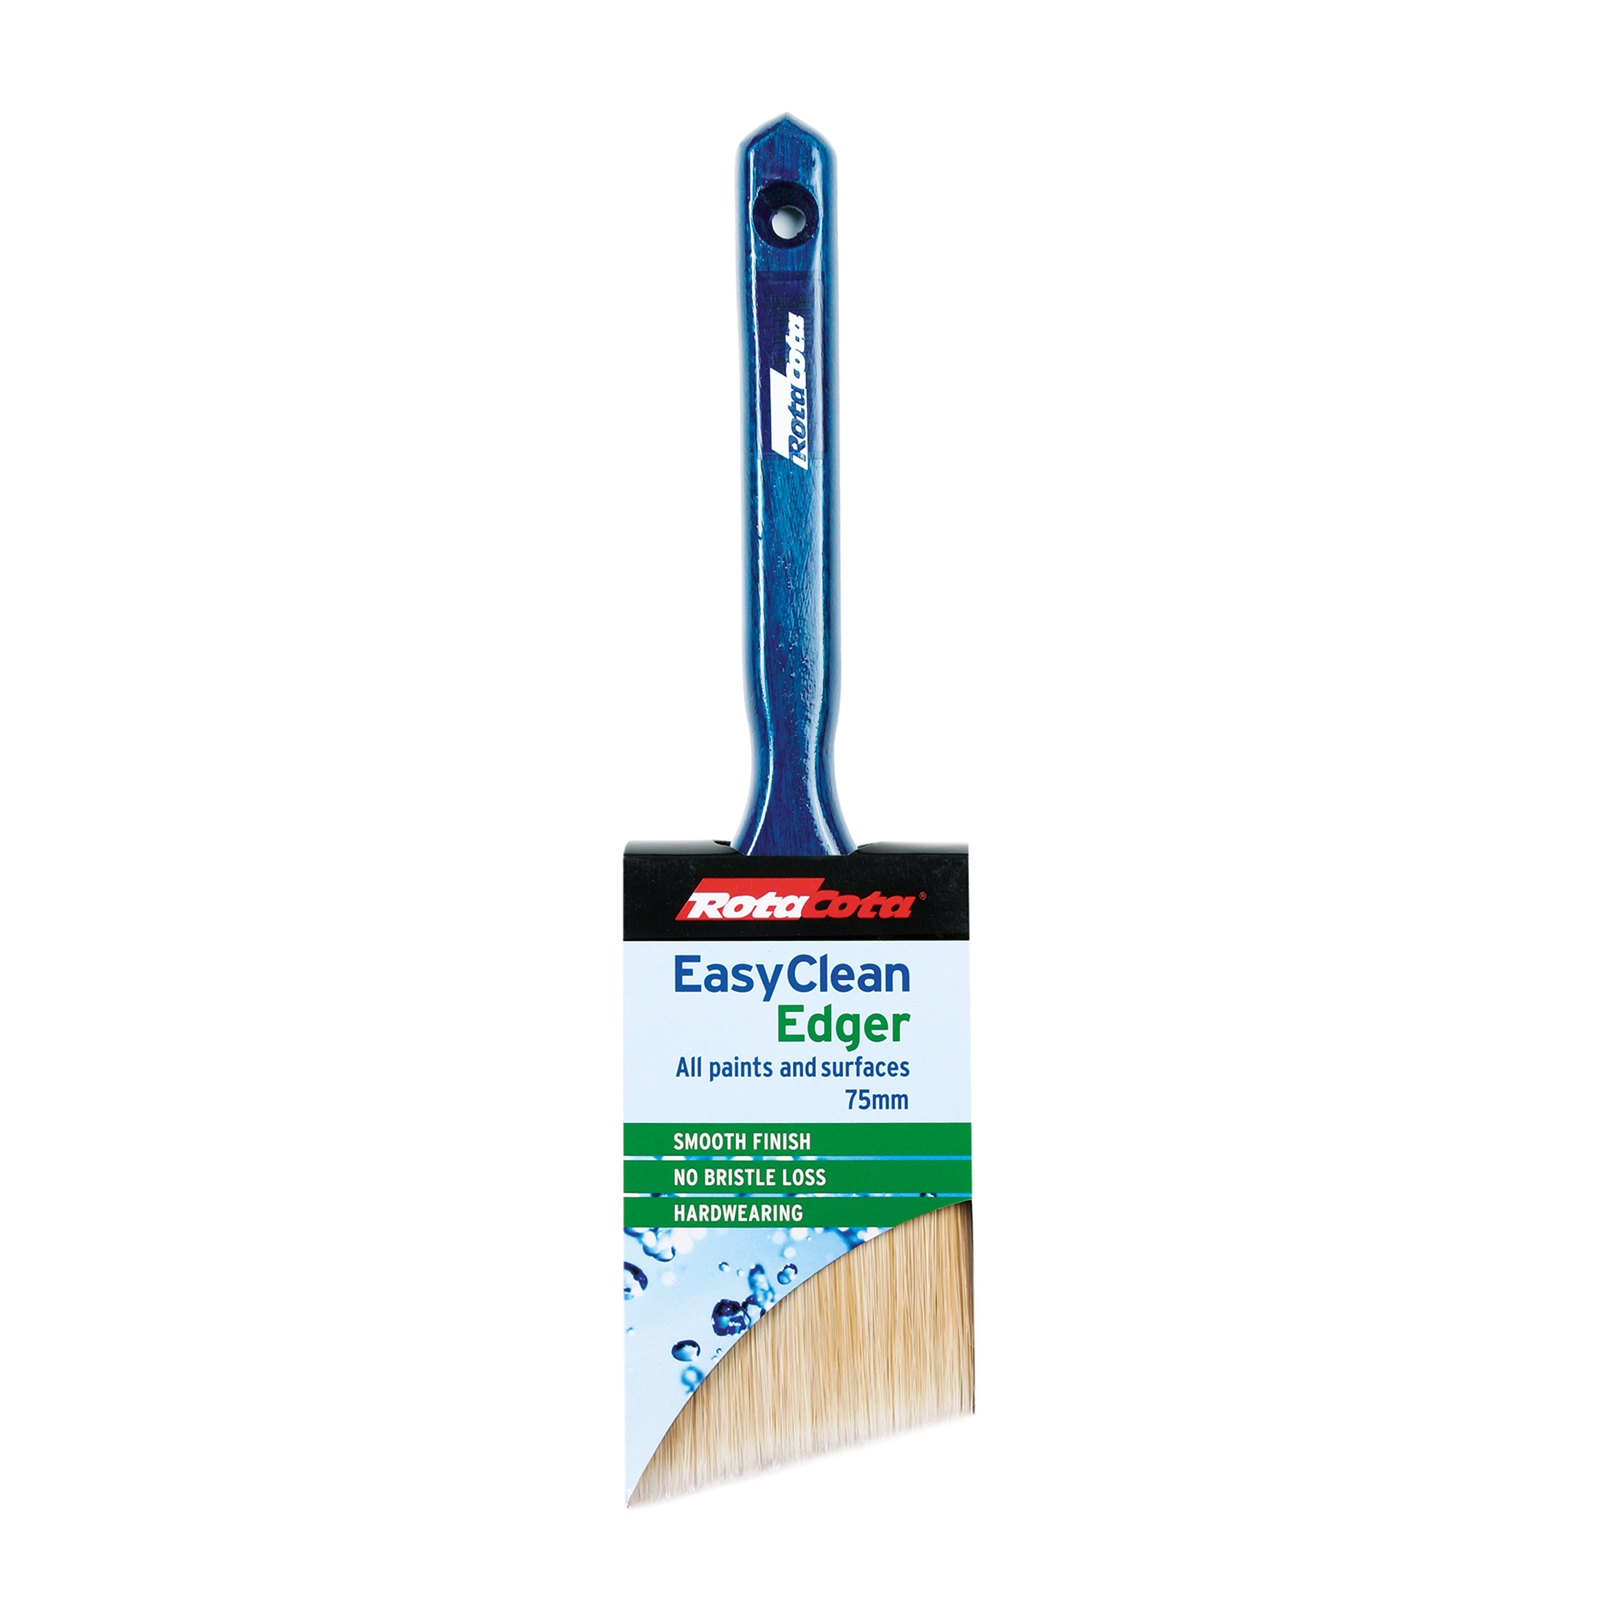 RotaCota 75mm Easy Clean Edger Brush